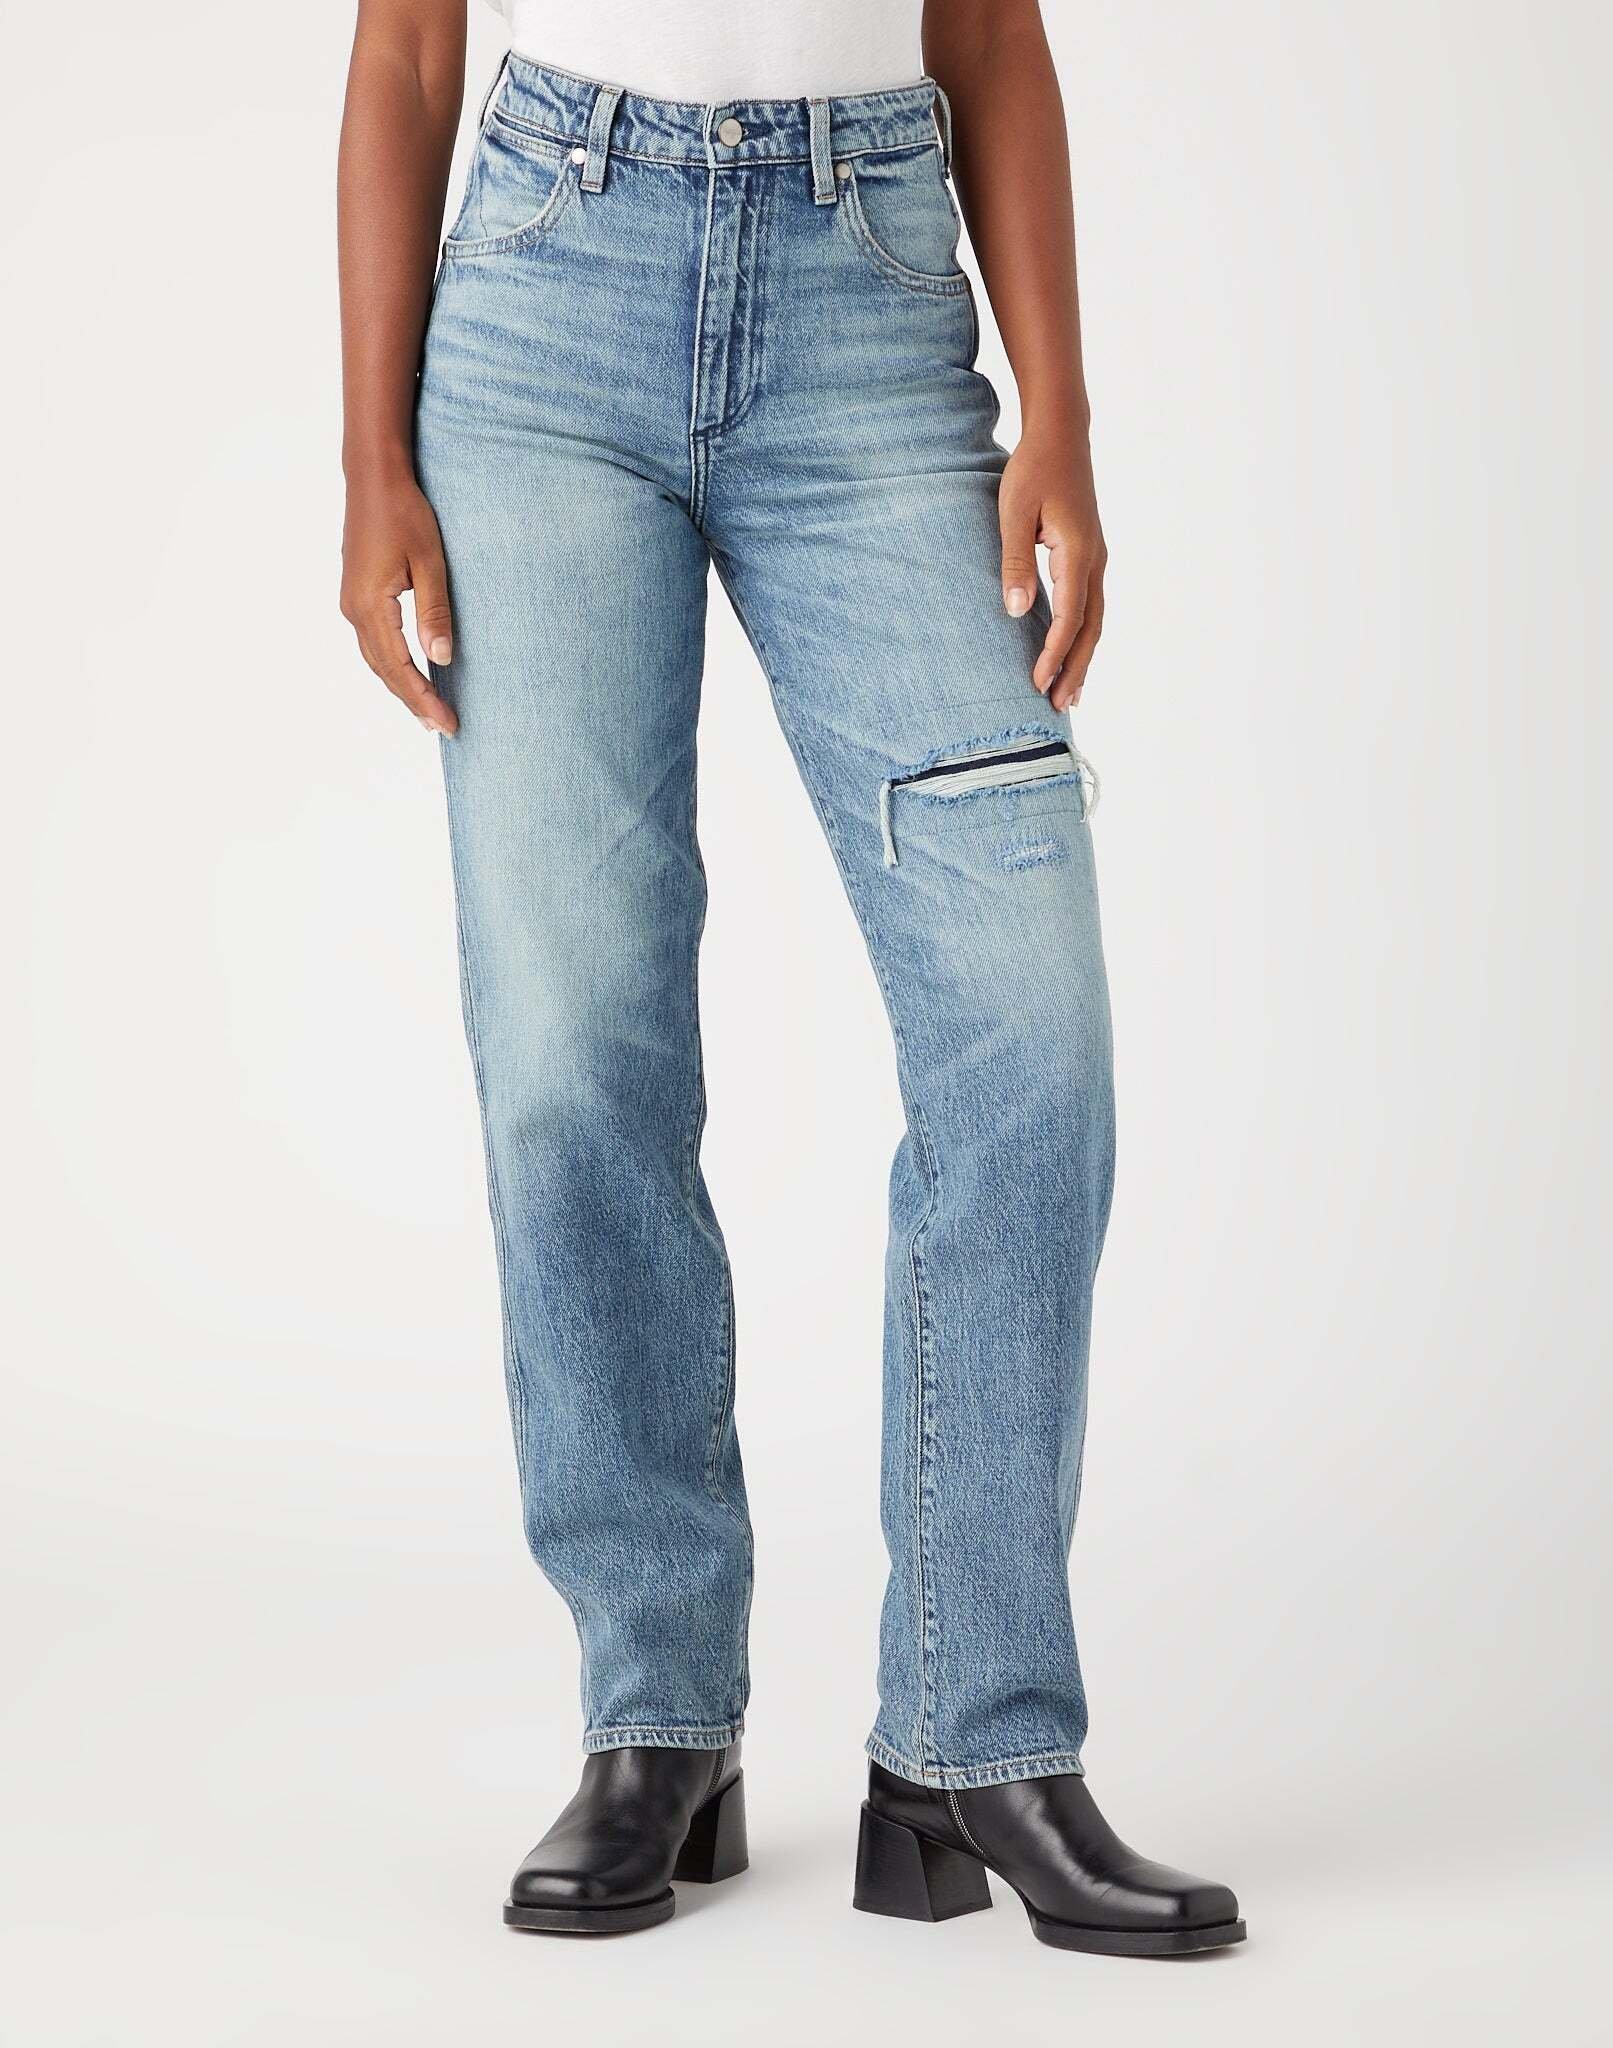 Wrangler  Jeans Straight Leg MOM STRAIGHT 